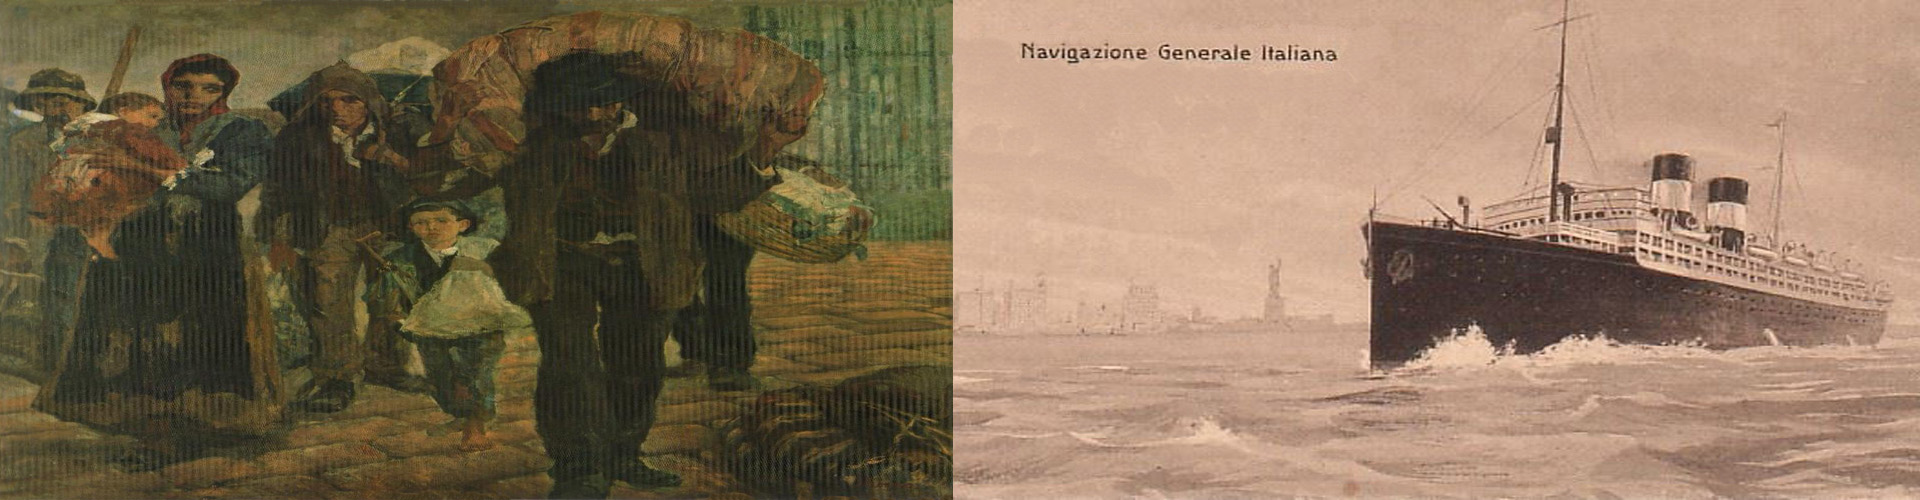 Montagem: quadro “Os imigrantes”, de Antonio Rocco (1910), e navio italiano.